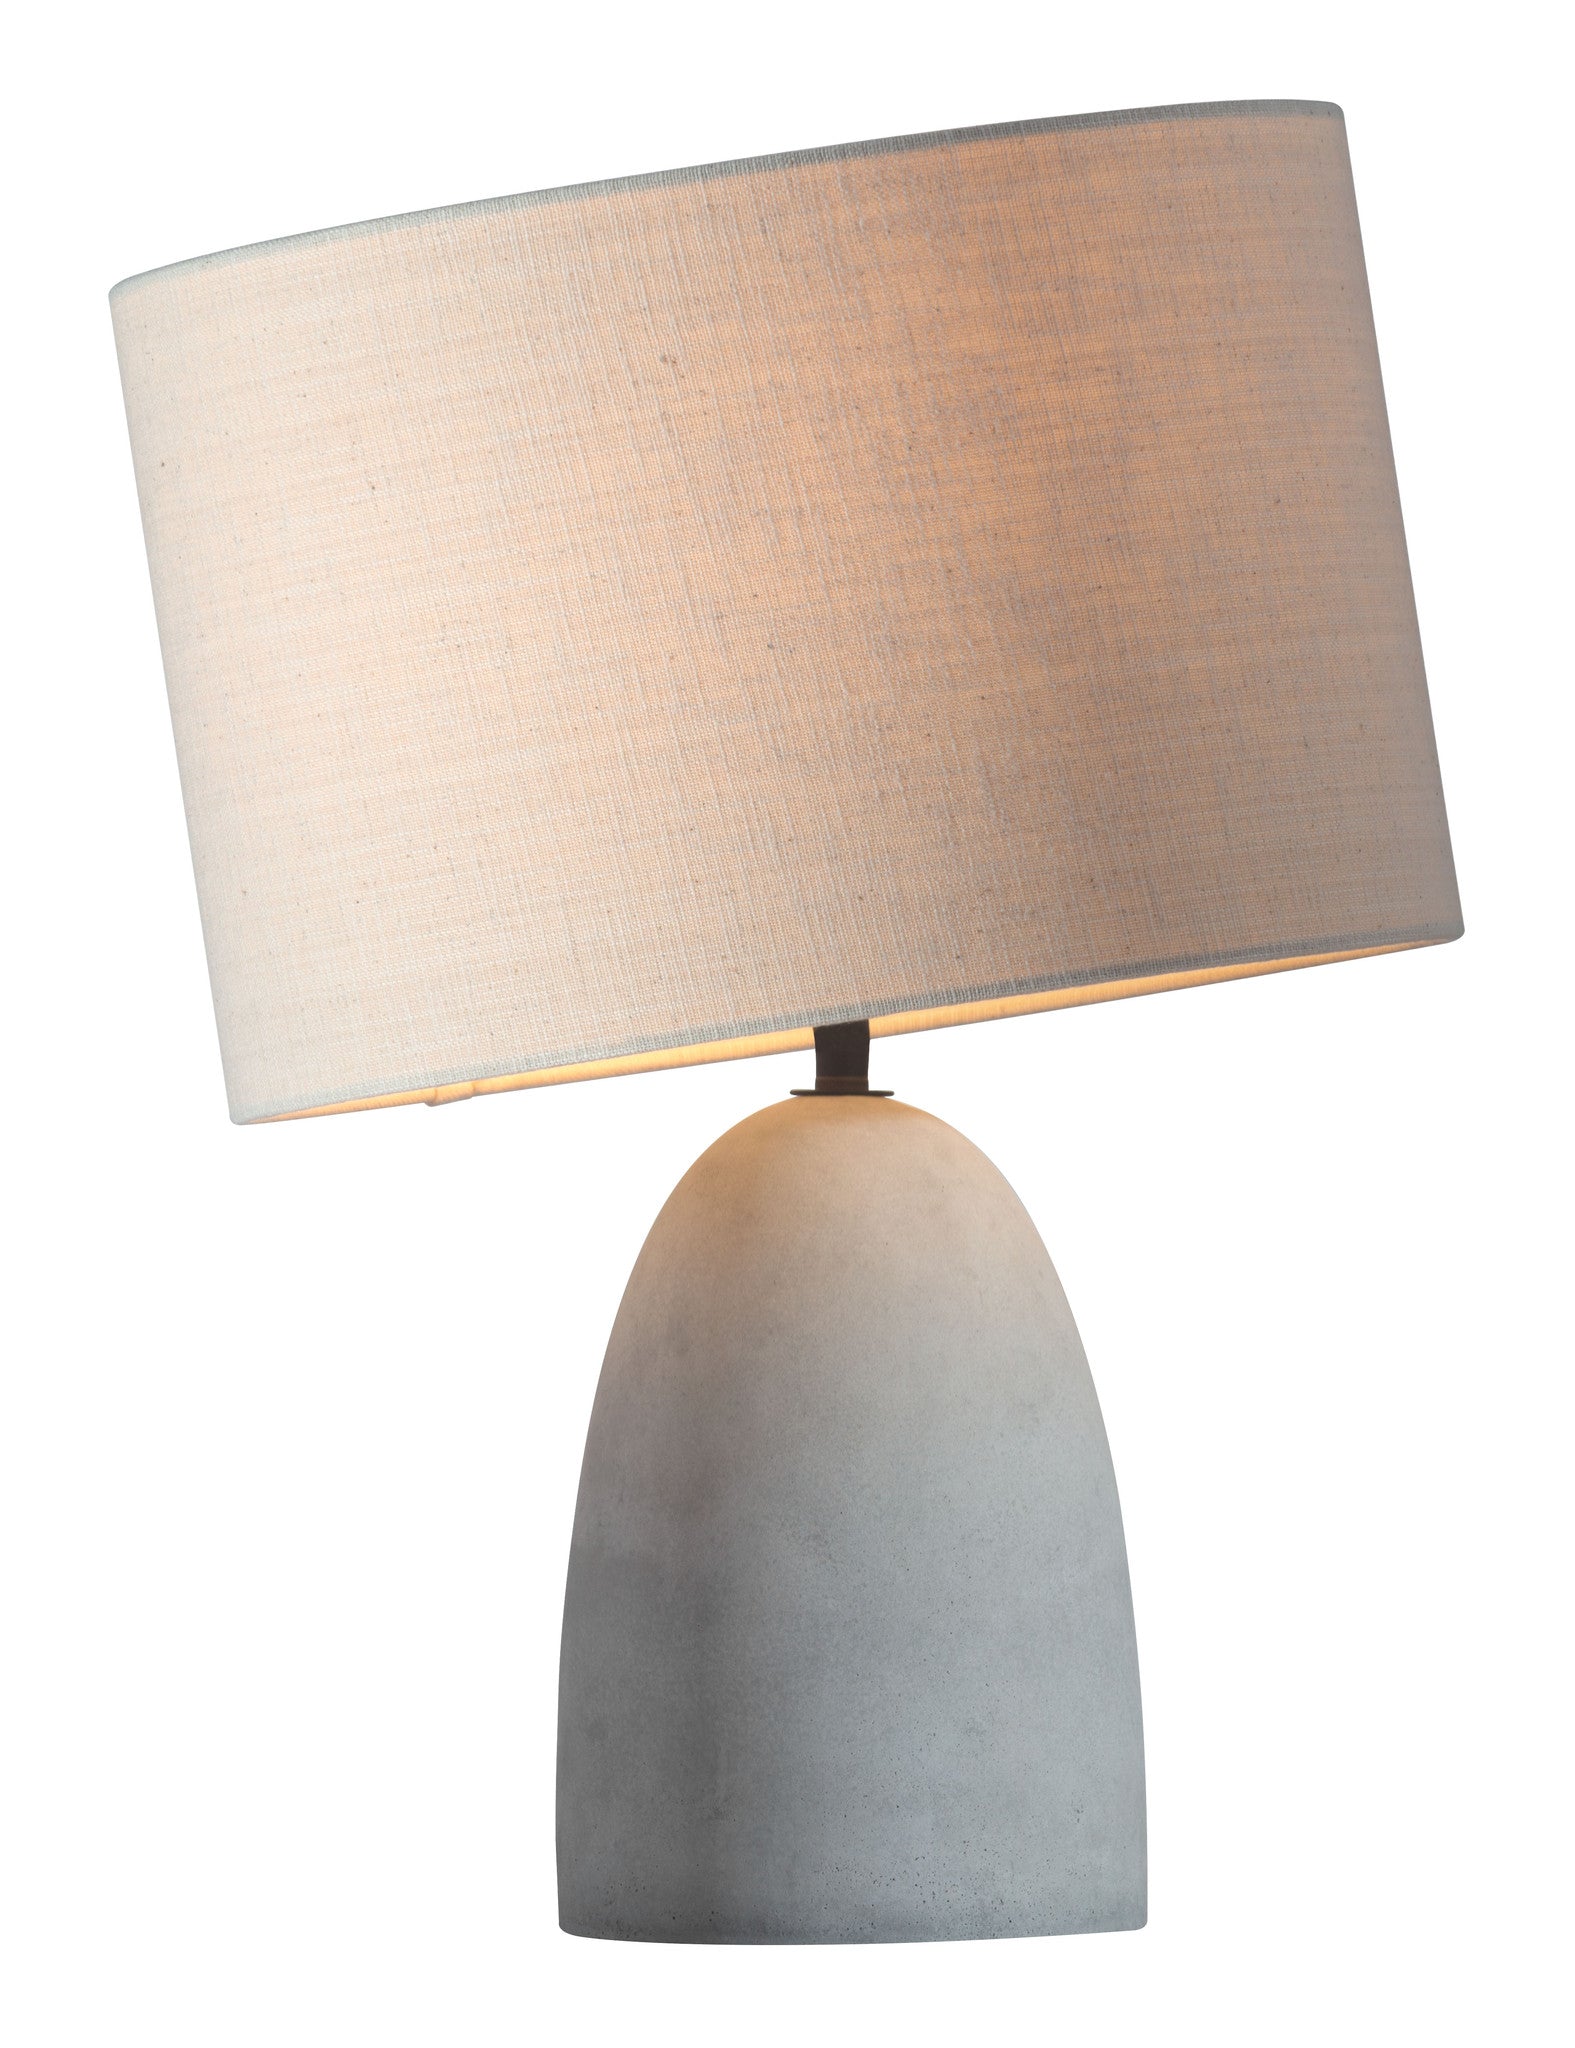 Viktor Table Lamp Beige/Concrete Gray